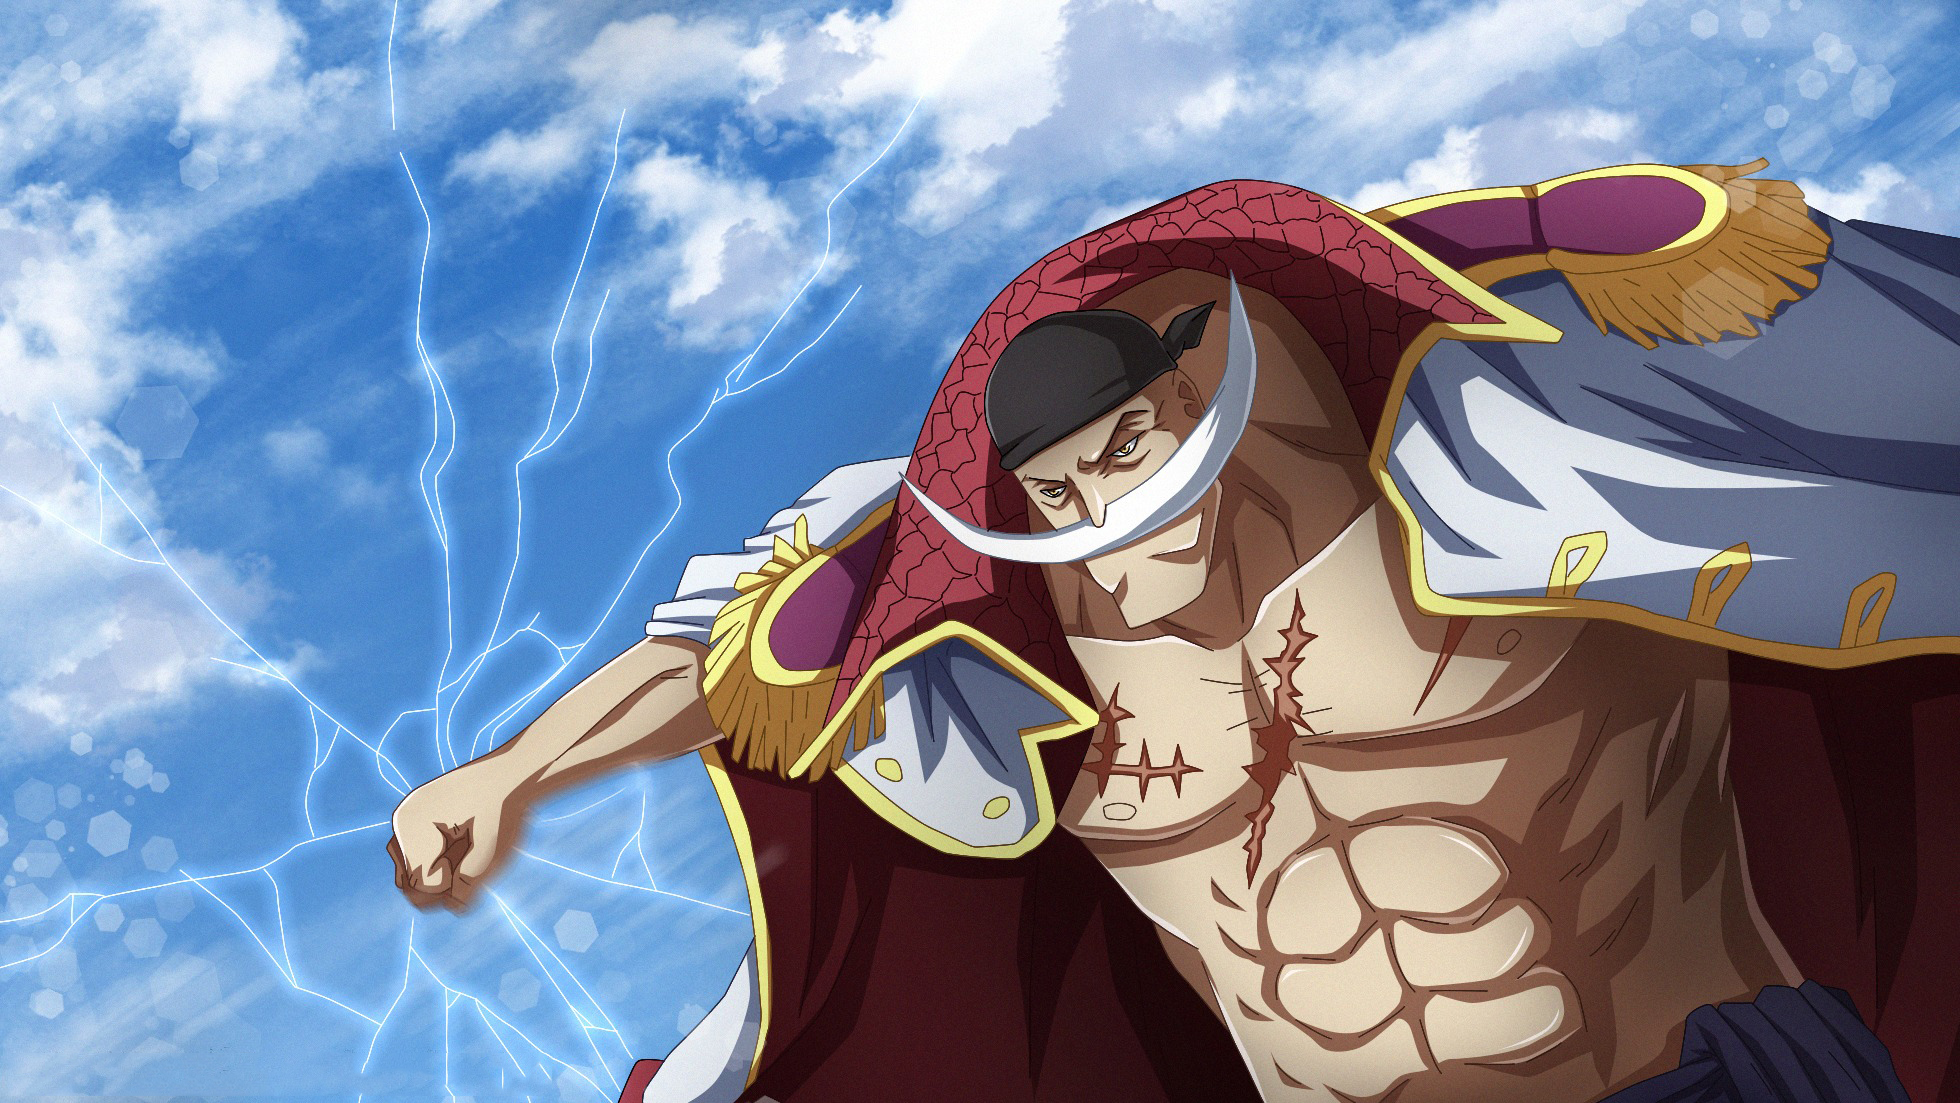 Nếu bạn là một fan của One Piece, bạn không thể bỏ qua hình nền Râu Trắng đầy sức mạnh và quyền năng. Hình ảnh này chắc chắn sẽ làm bạn cảm thấy đầy cảm hứng và tinh thần chiến đấu.